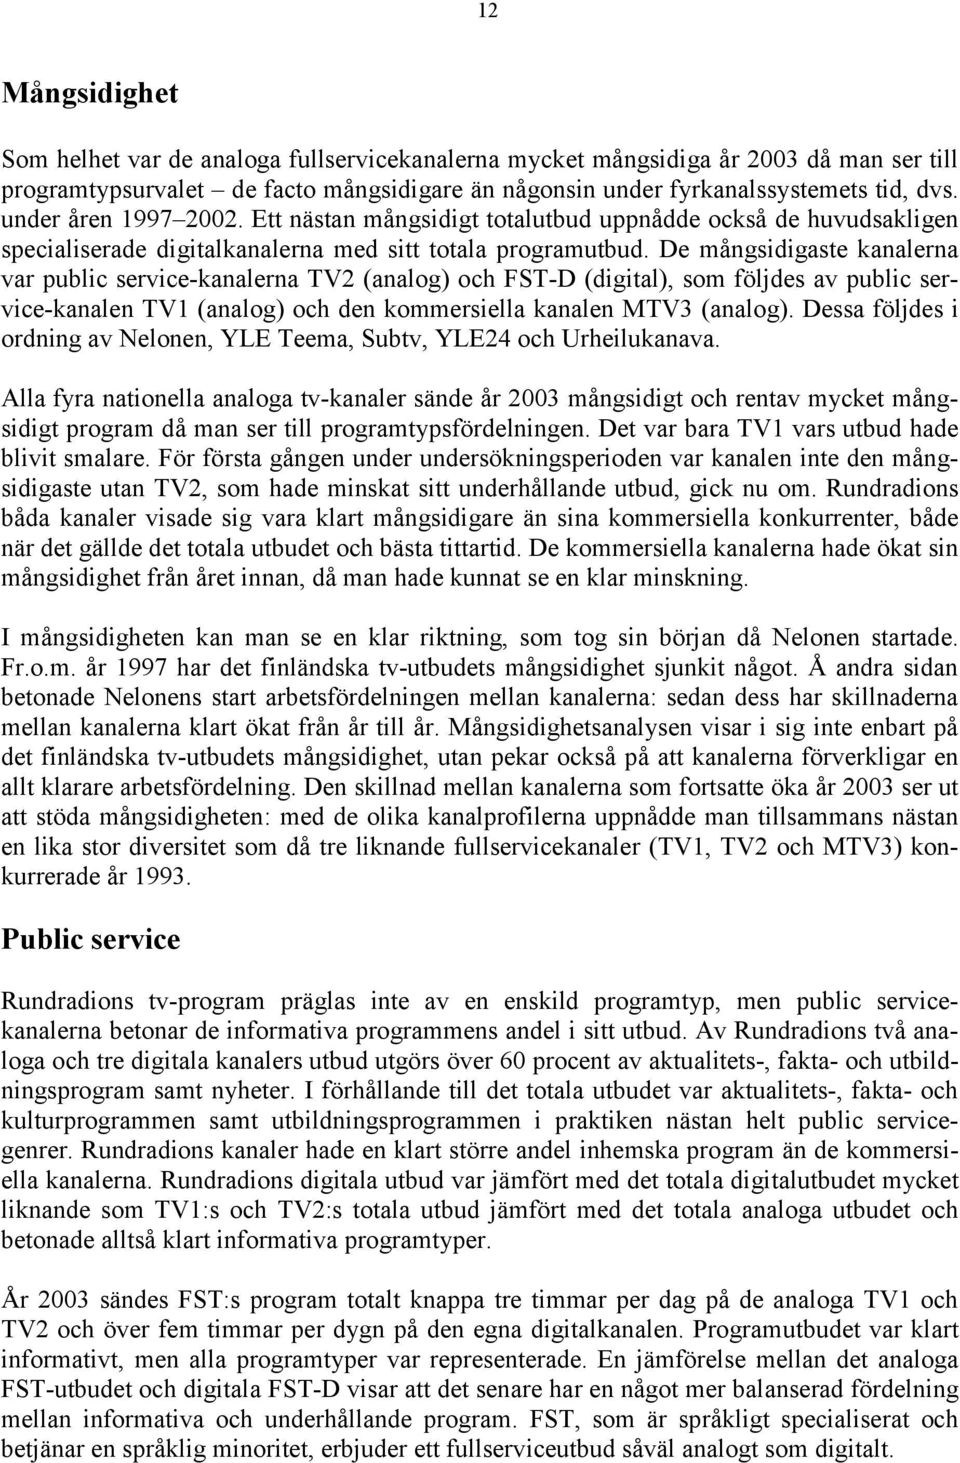 De mångsidigaste kanalerna var public service-kanalerna TV2 (analog) och FST-D (digital), som följdes av public service-kanalen TV1 (analog) och den kommersiella kanalen MTV3 (analog).